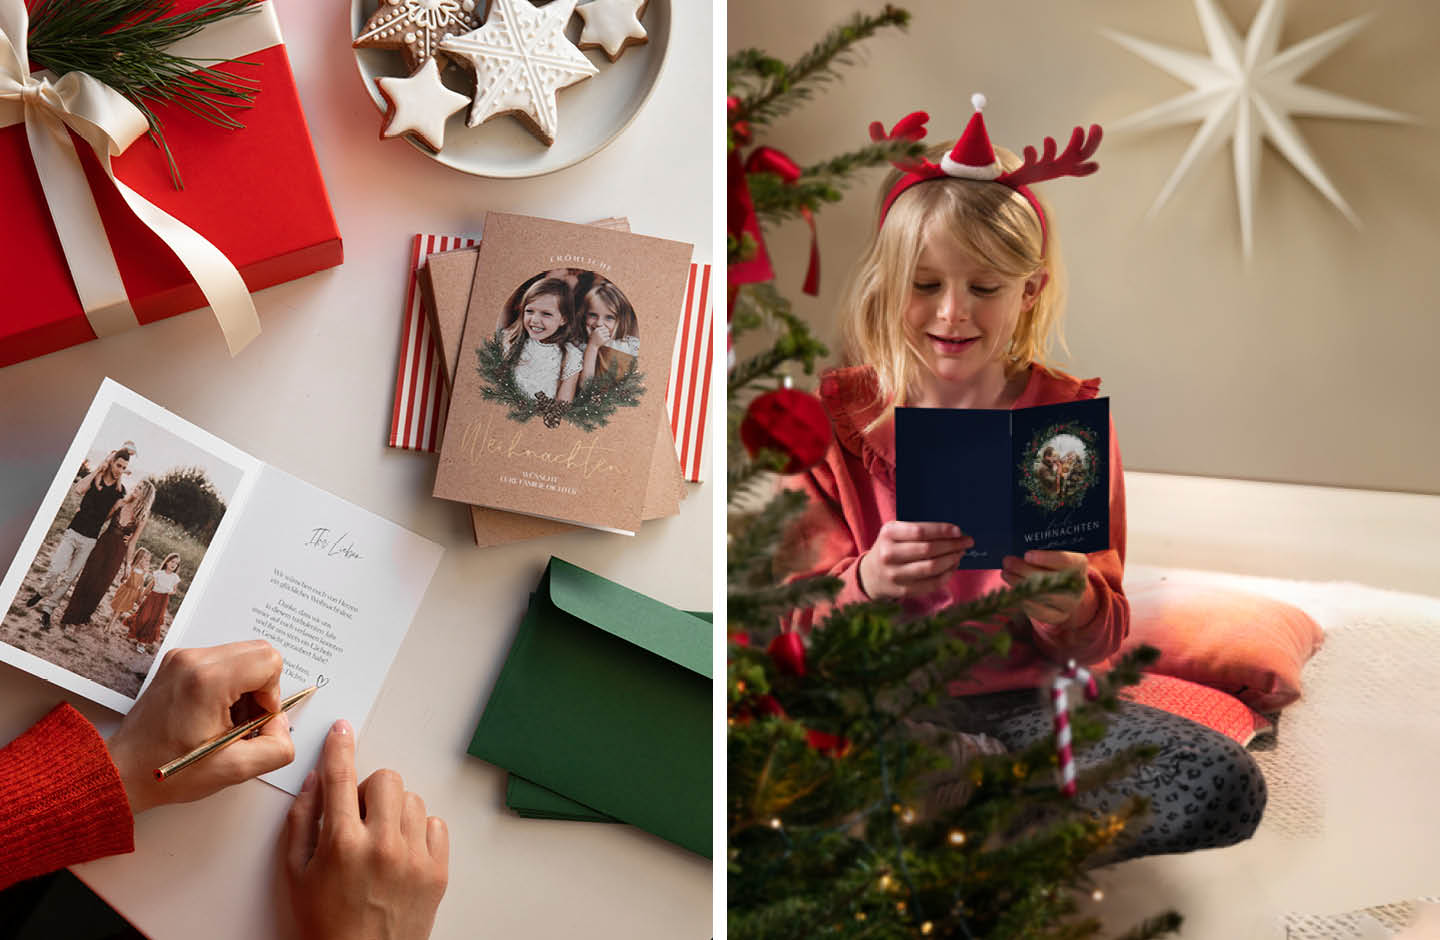 Weihnachtskarten werden beschrieben. Mädchen in rotem Pullover liest Weihnachtskarte.